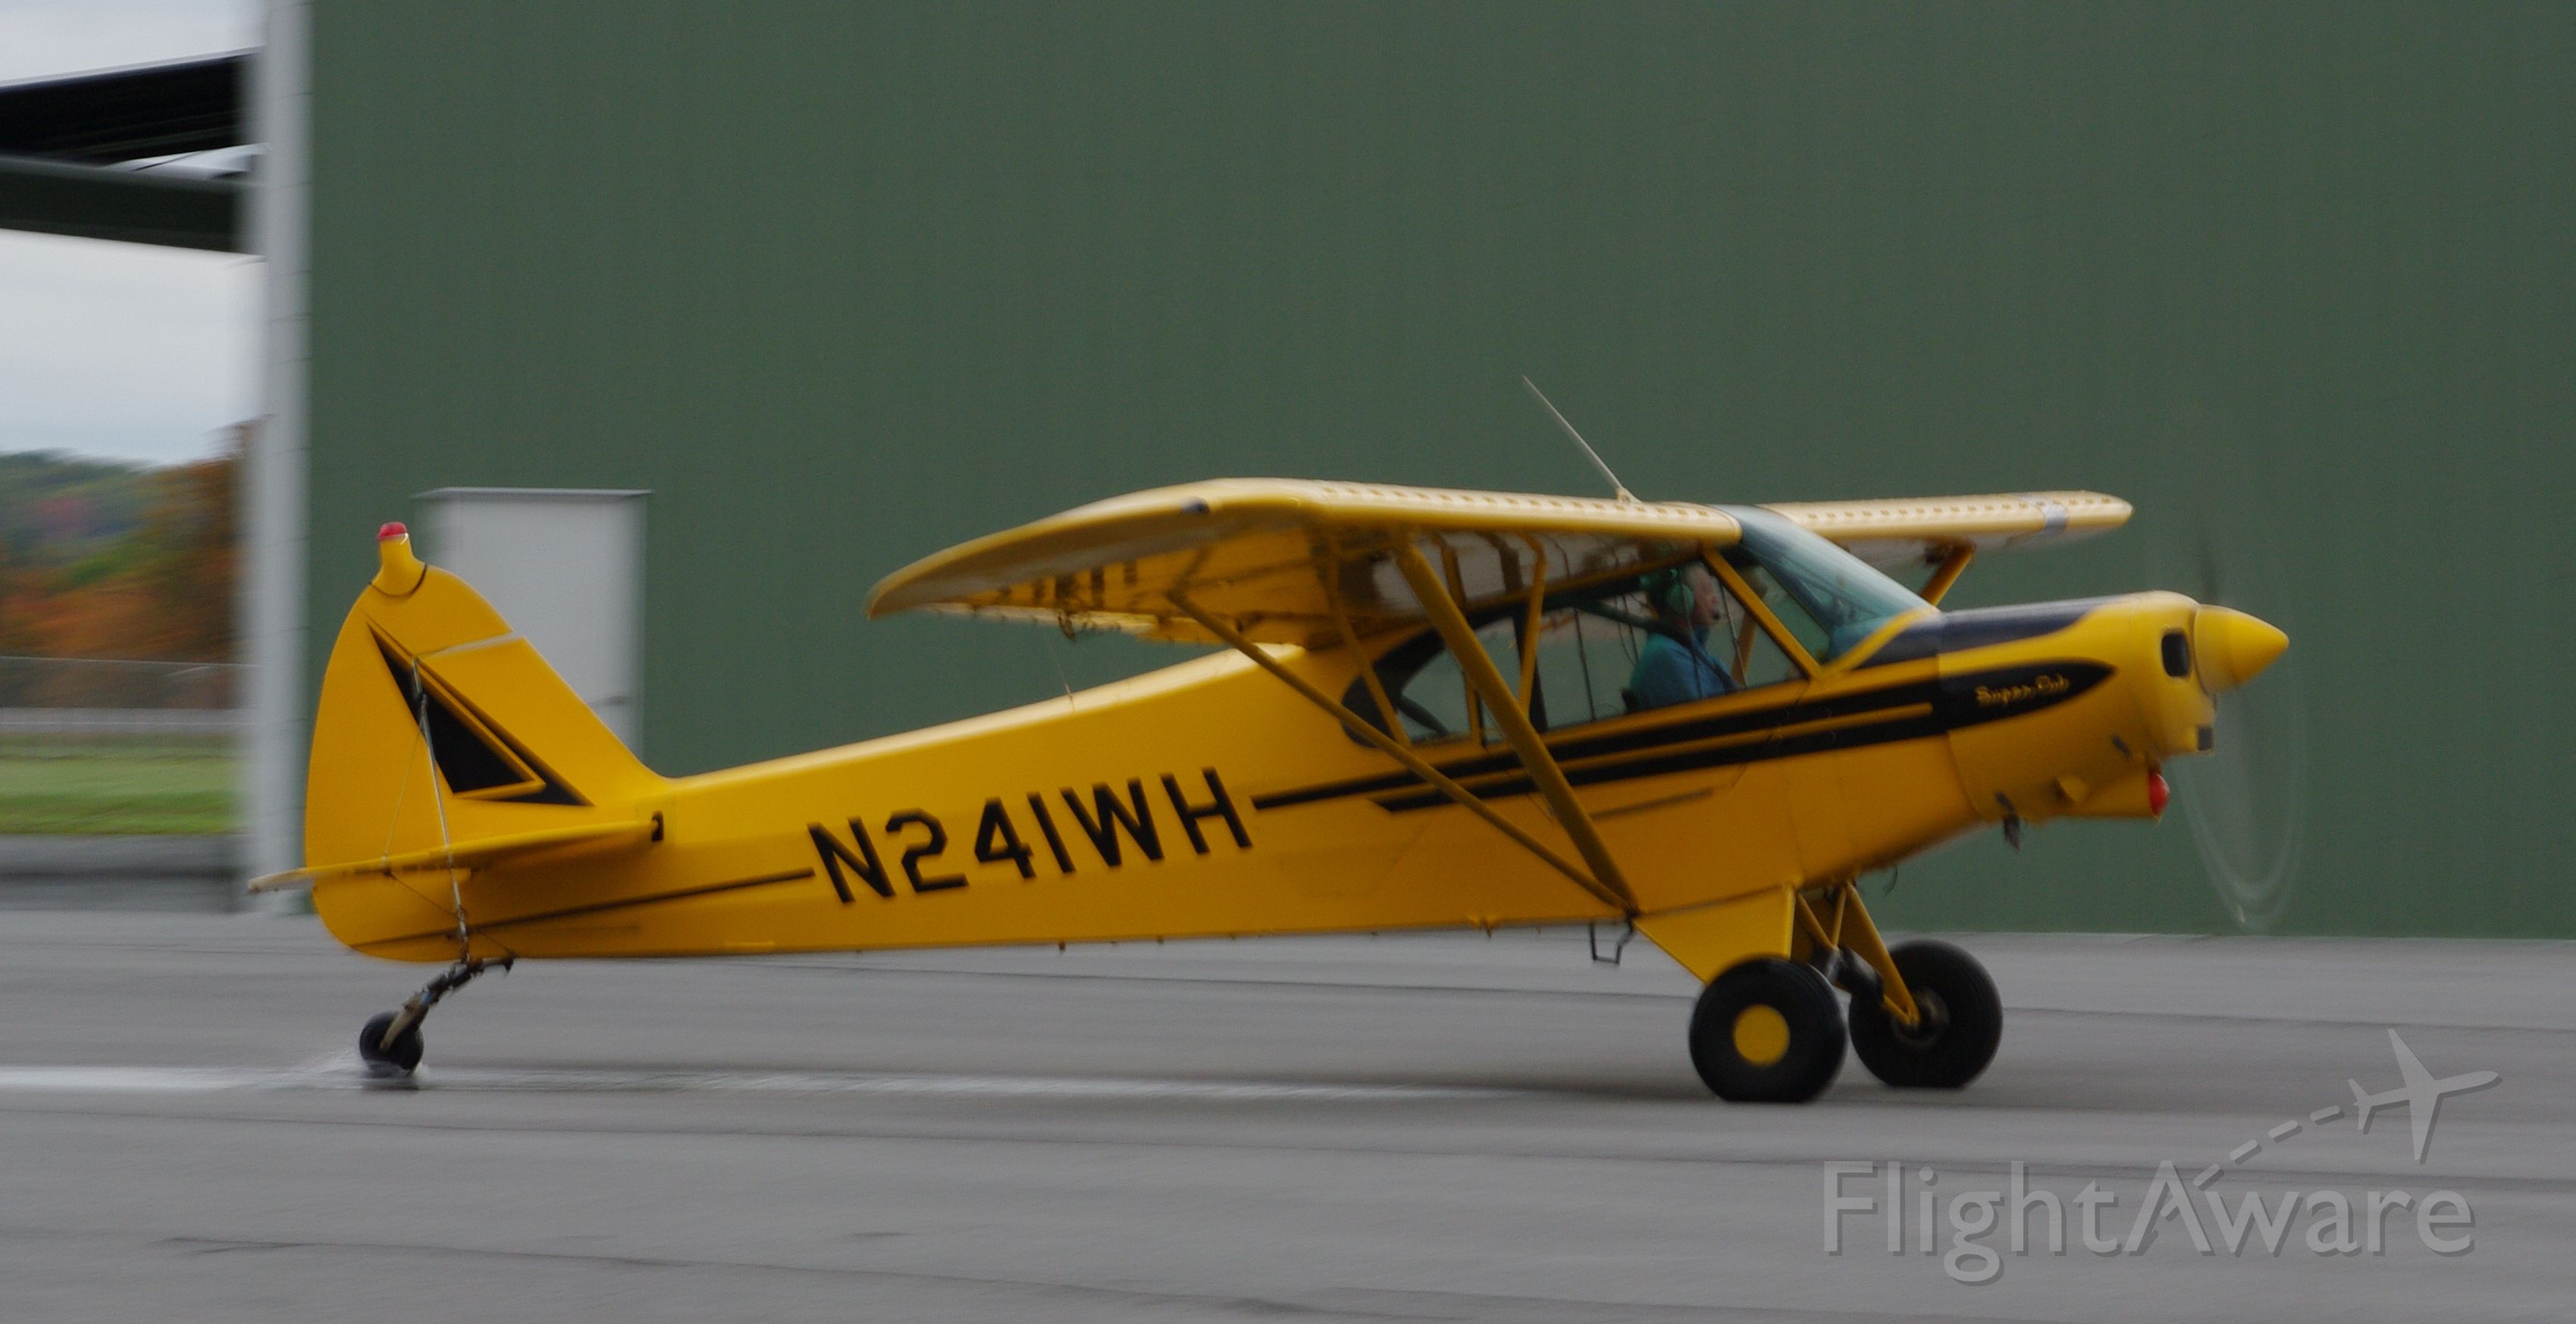 Piper L-21 Super Cub (N241WH)